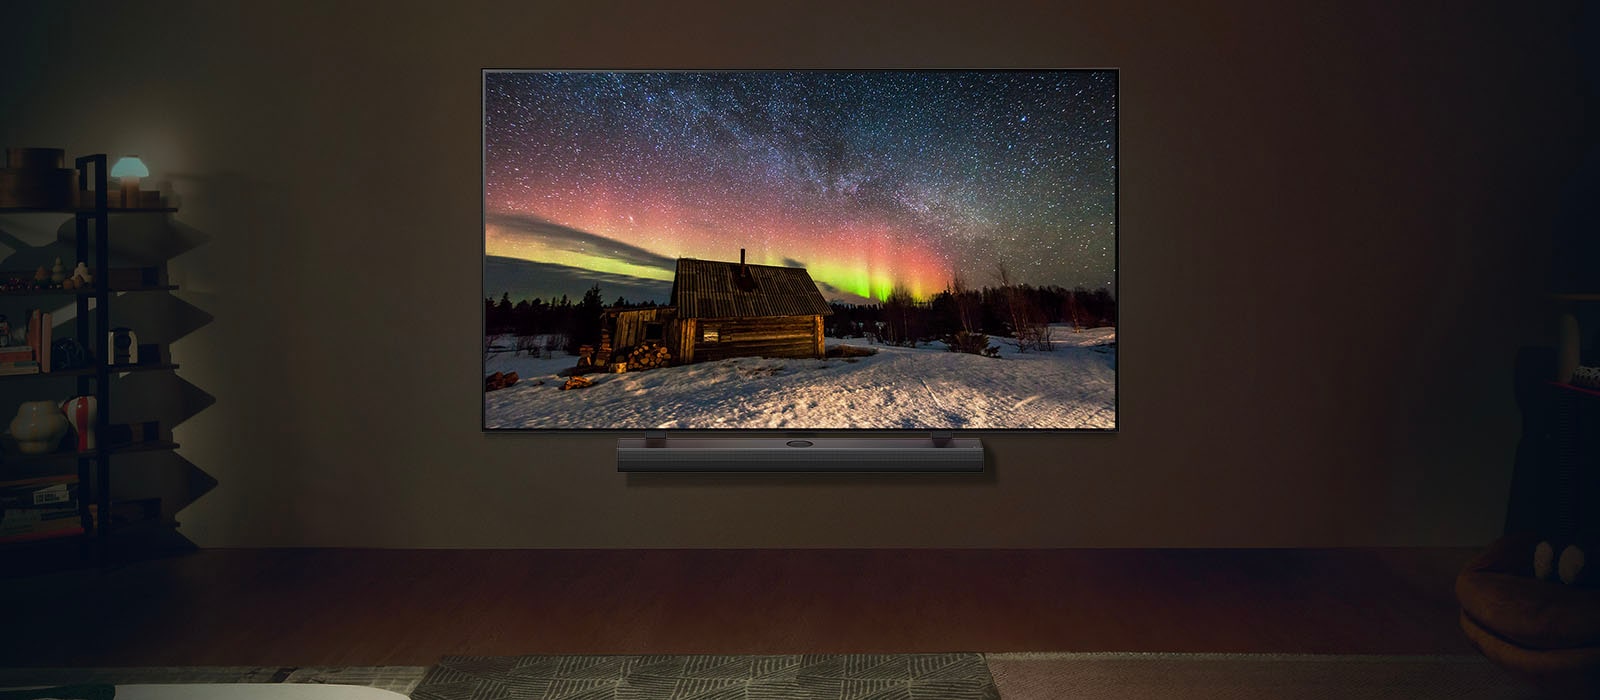 夜晚時位於現代客廳空間的 LG TV 和 LG Soundbar。極光螢幕影像隨著理想亮度顯示。